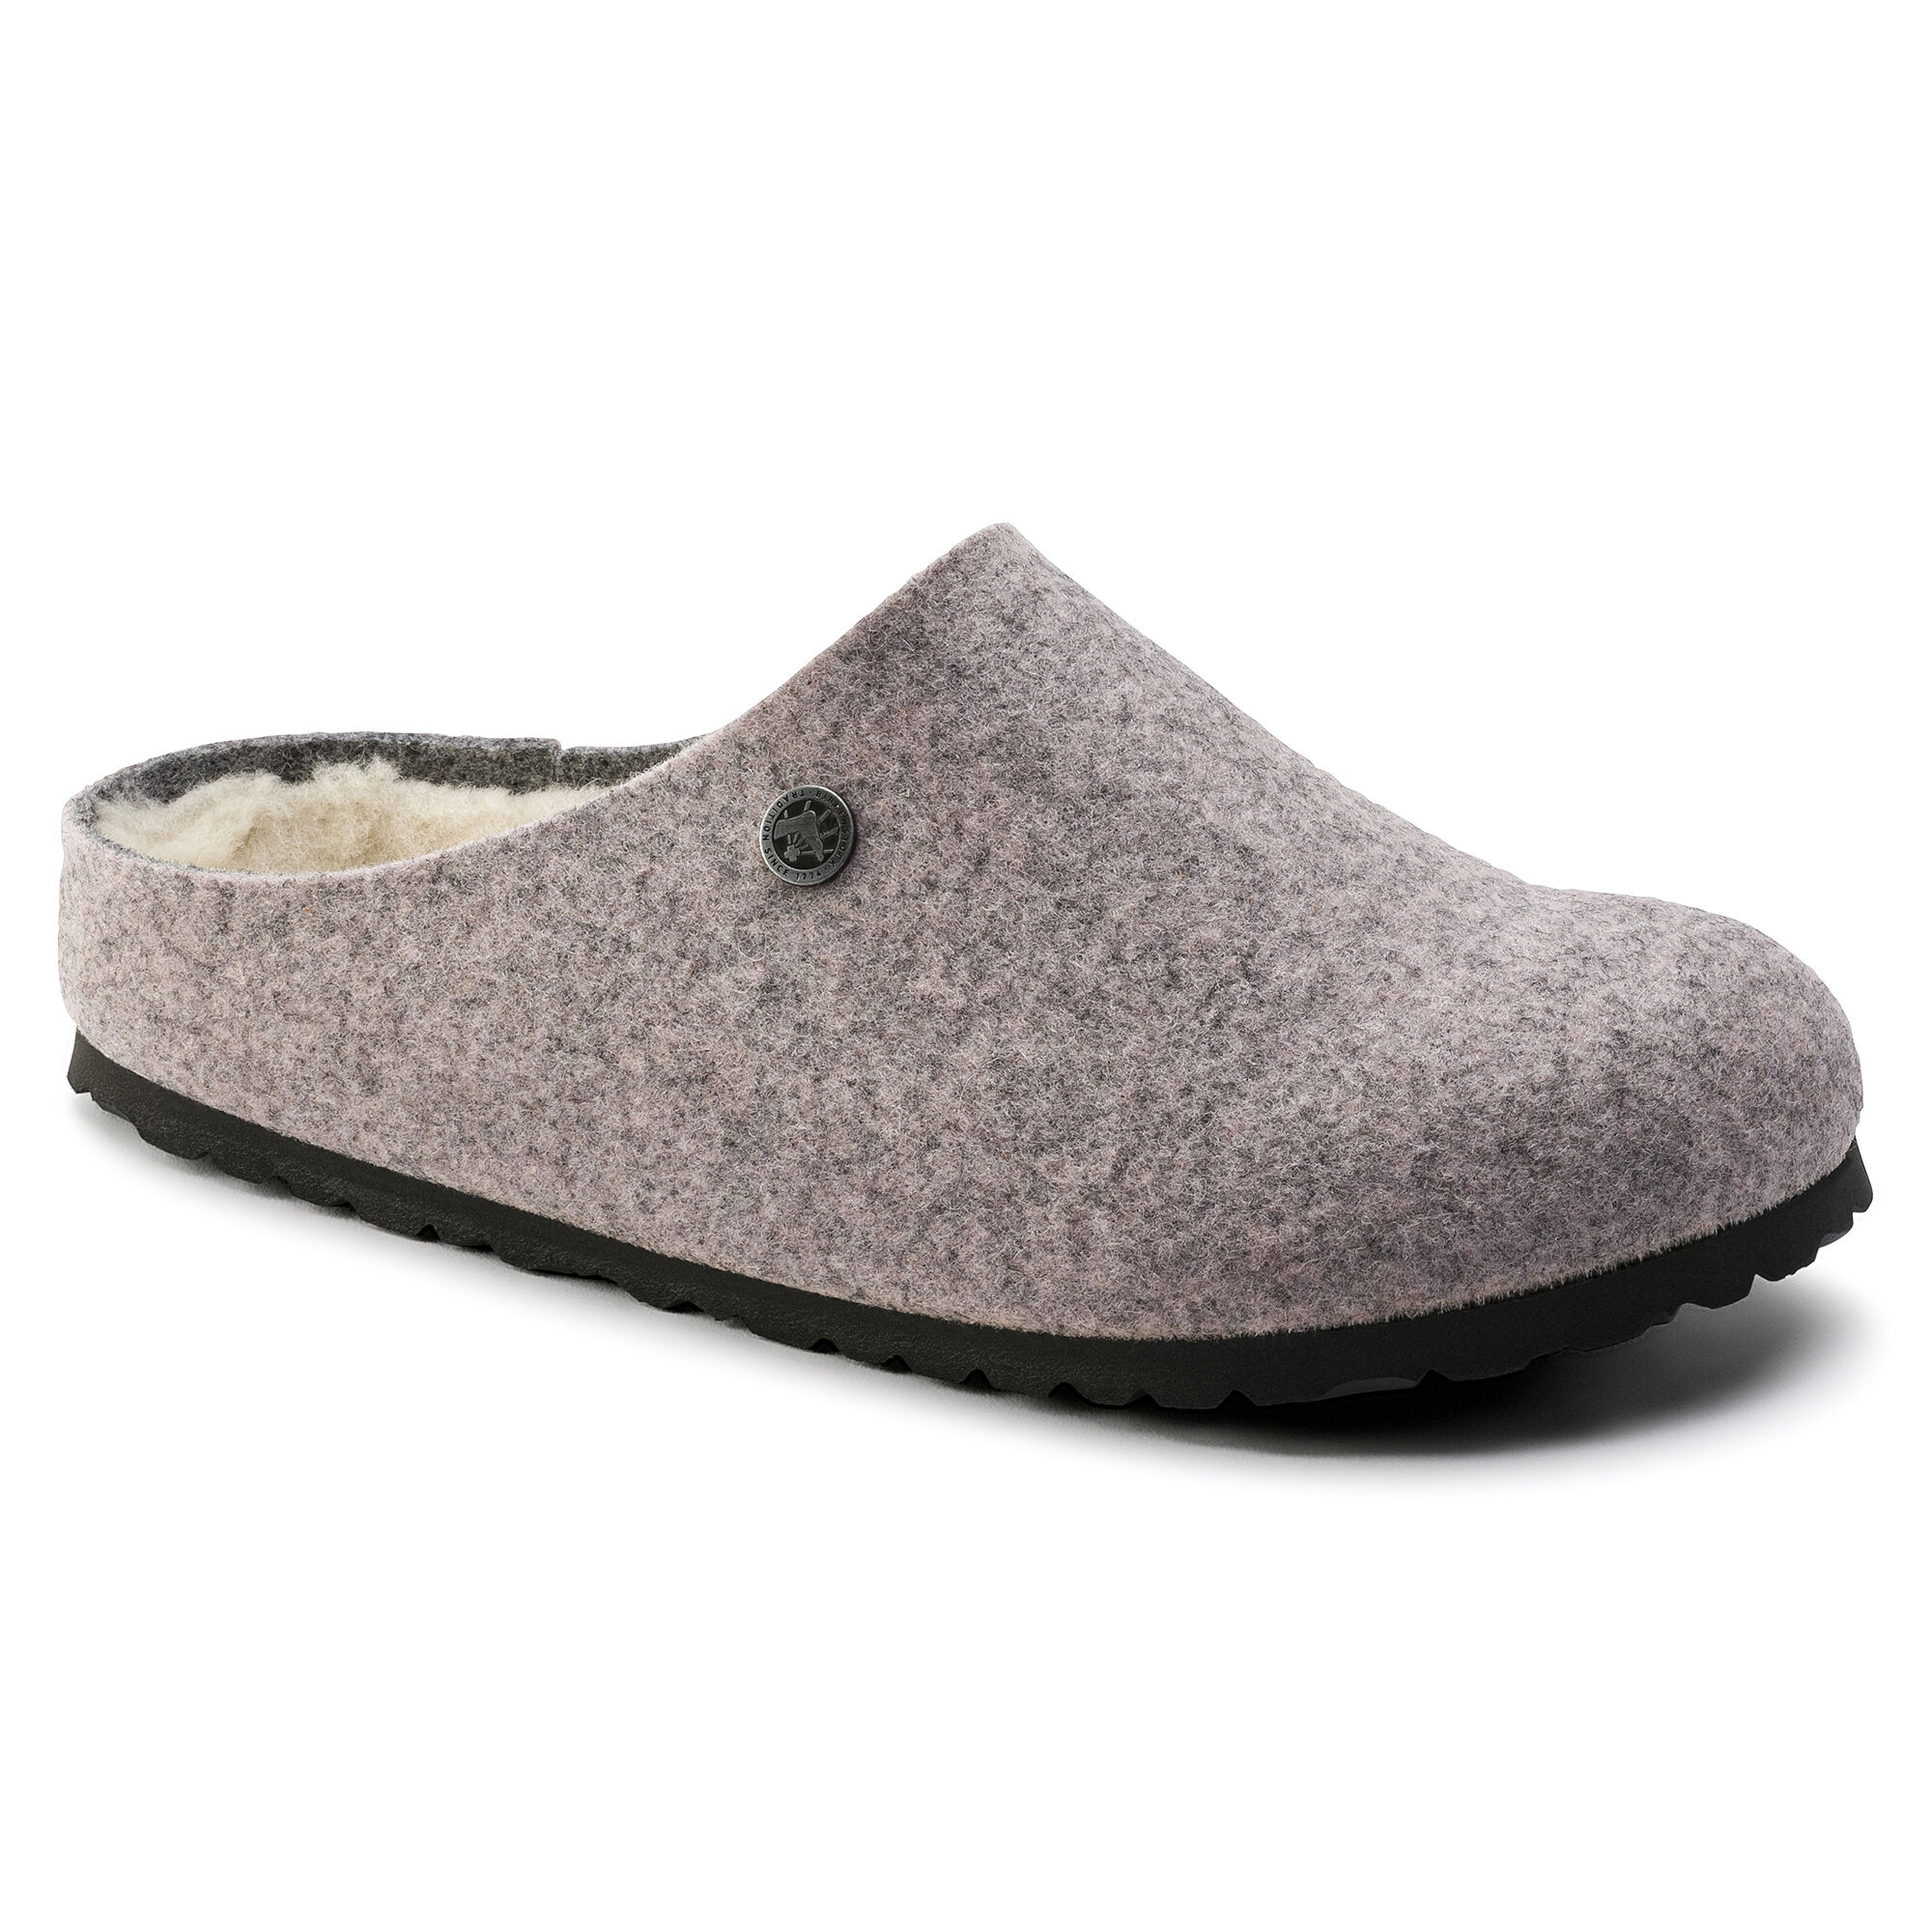 birkenstock wool slippers